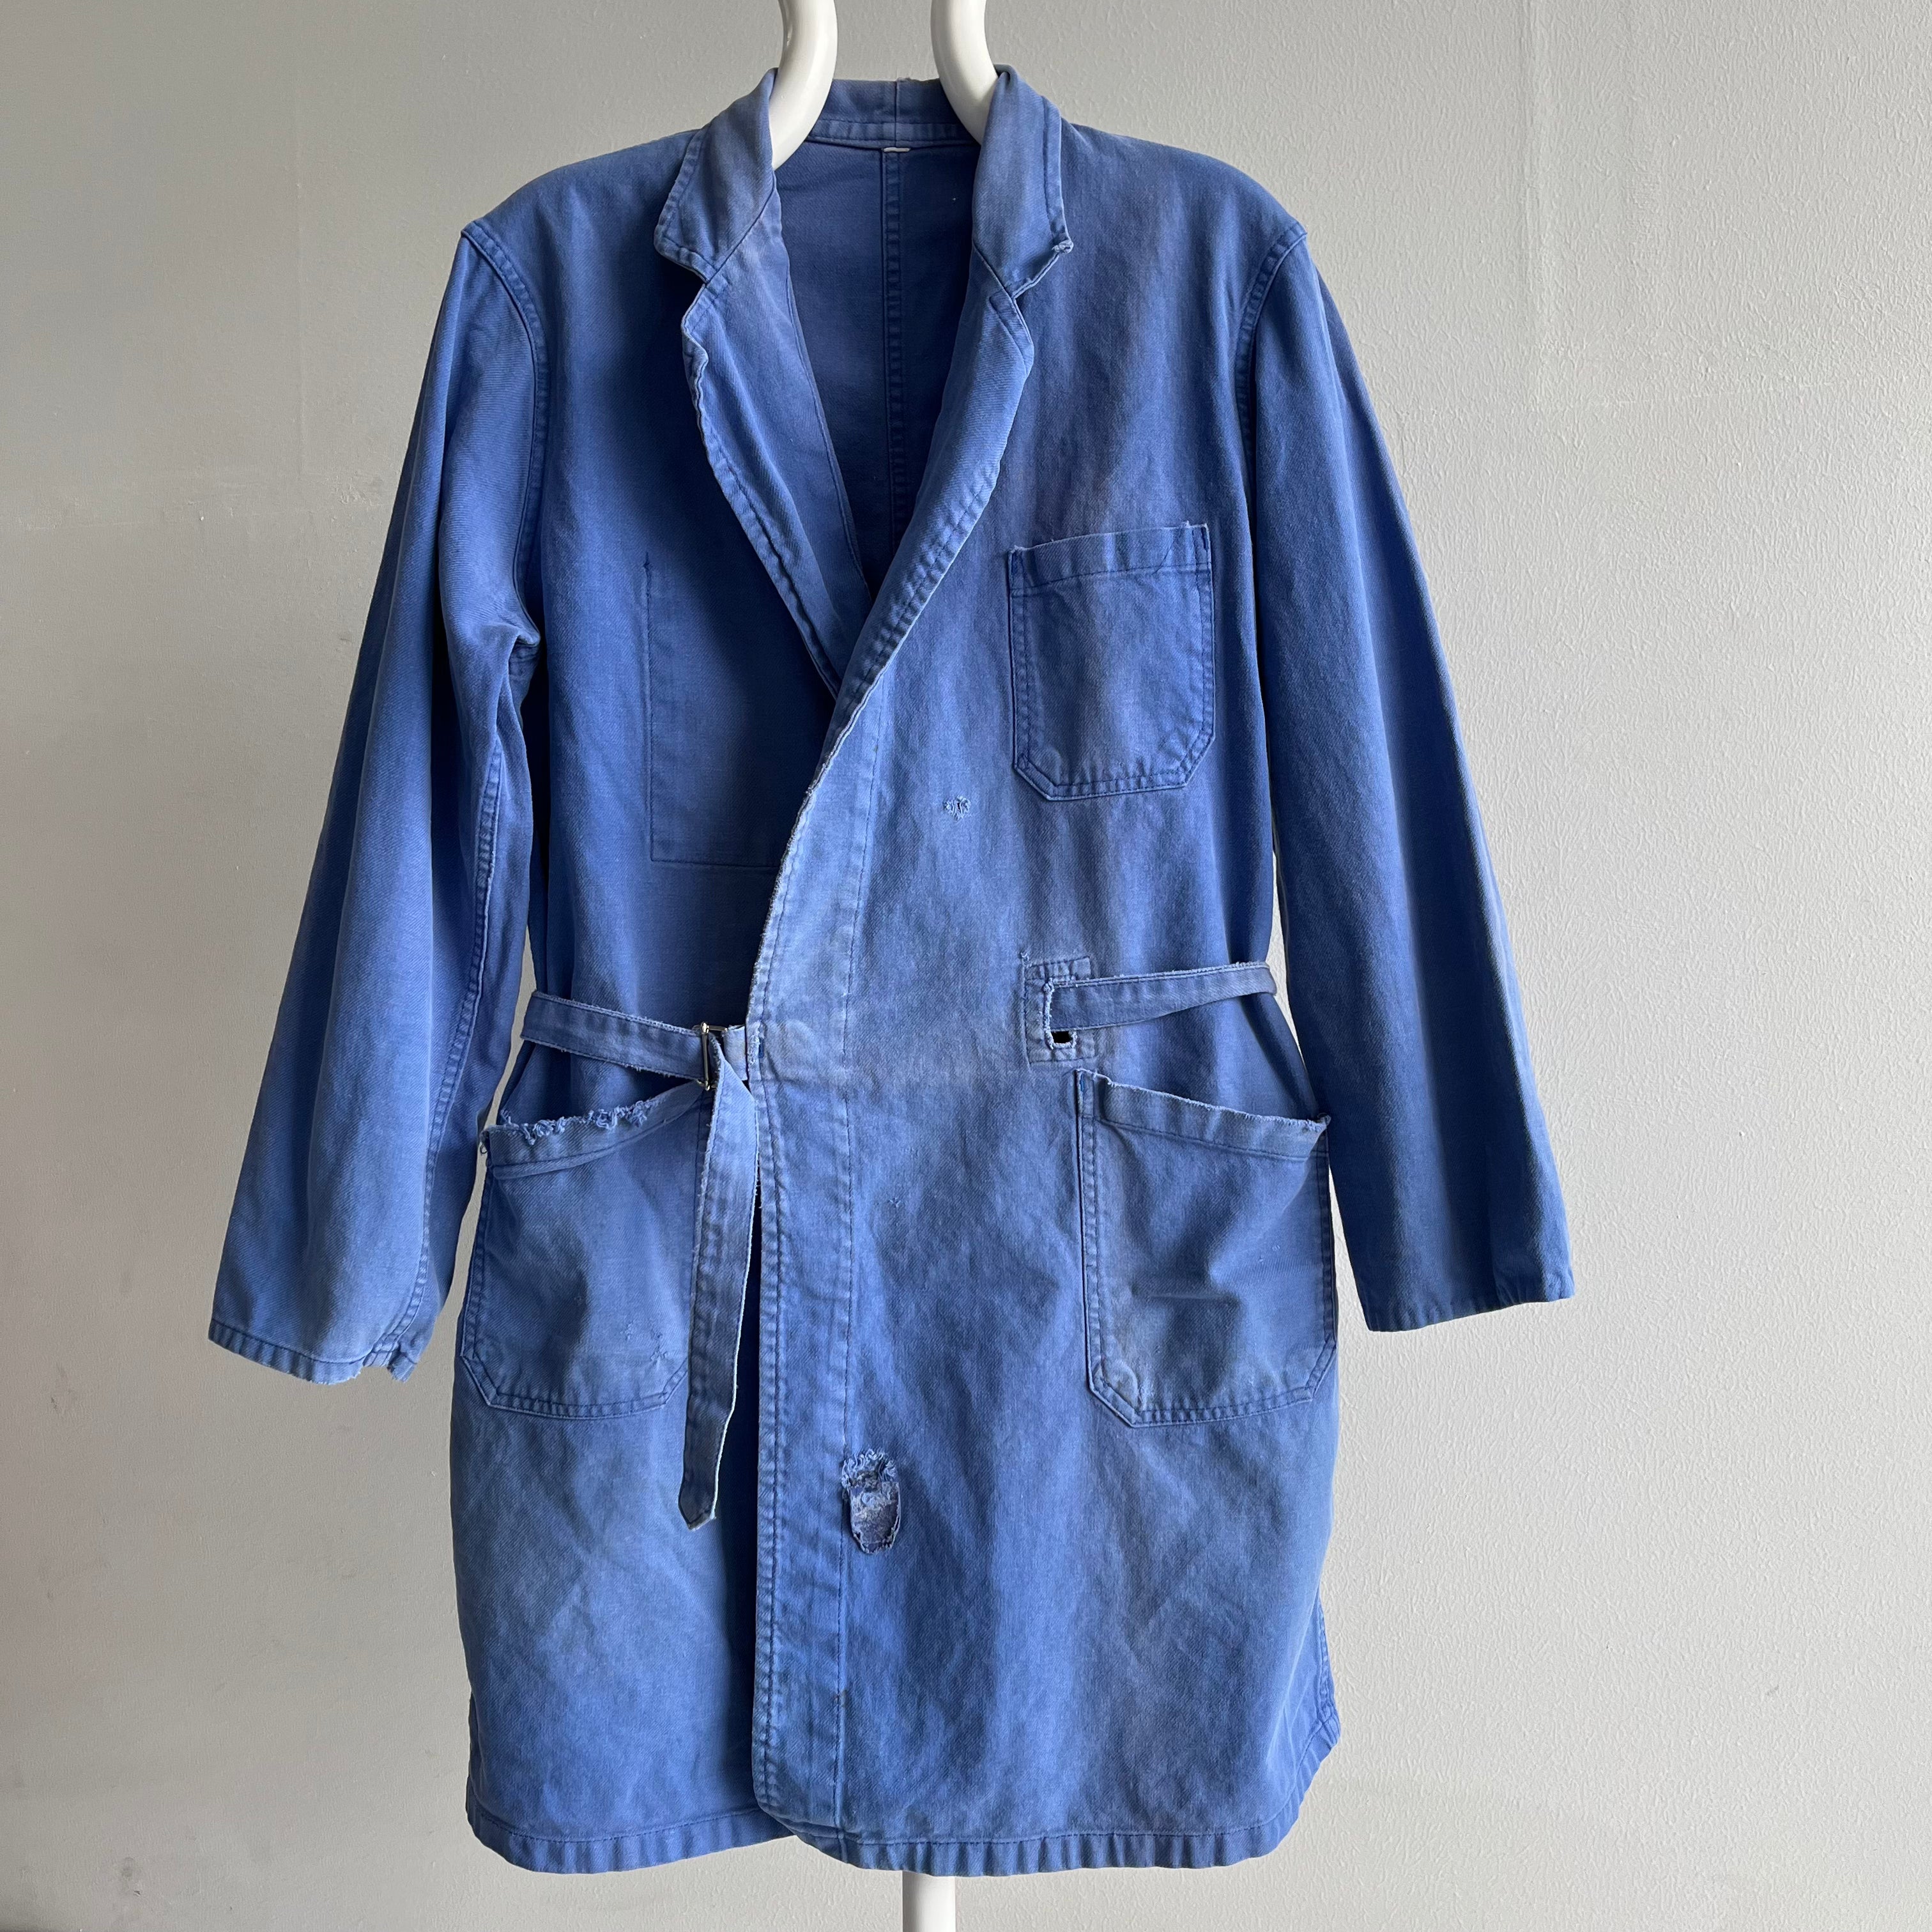 Manteau de corvée de peintres français en coton super doux, délavé et usé des années 1970 avec ceinture